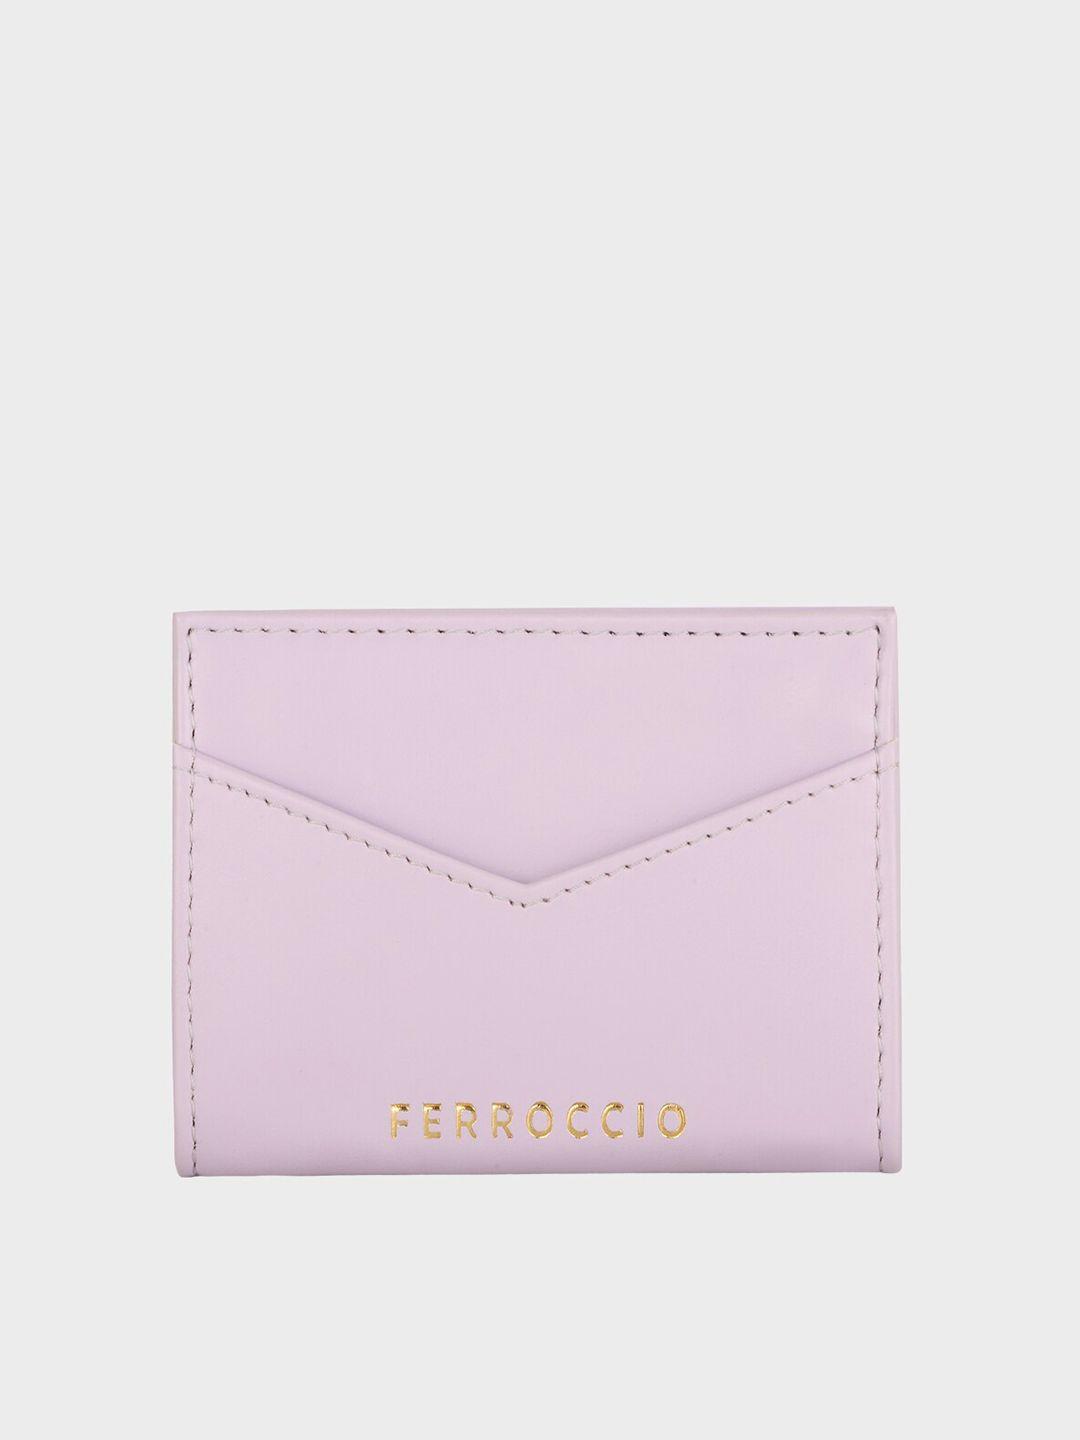 ferroccio women purple two fold wallet